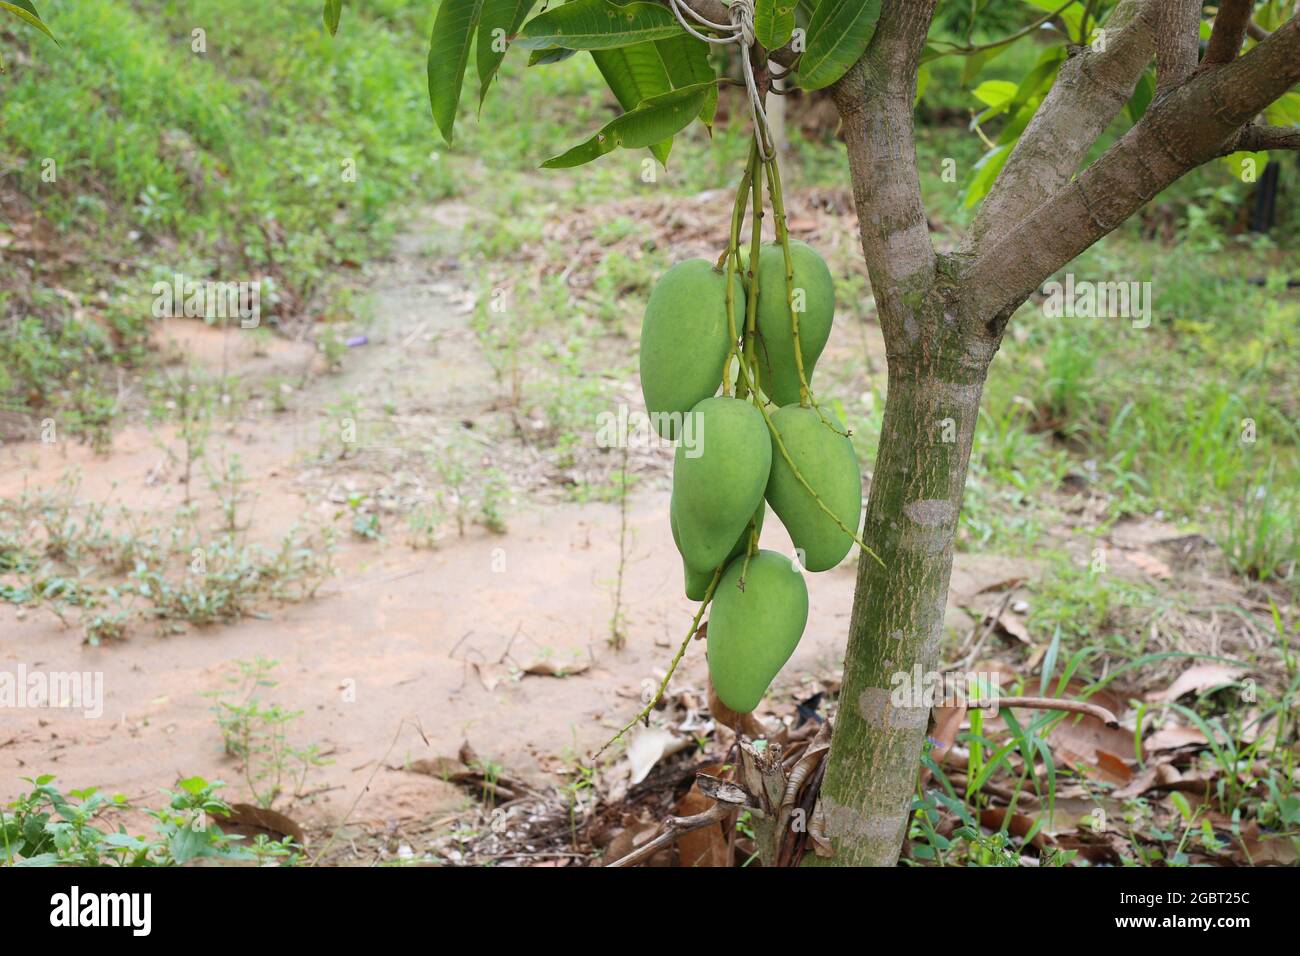 Grüne Mango ist nicht reif auf den Bäumen im Obstgarten, Obstgarten im Tropengebiet von Thailand. Stockfoto